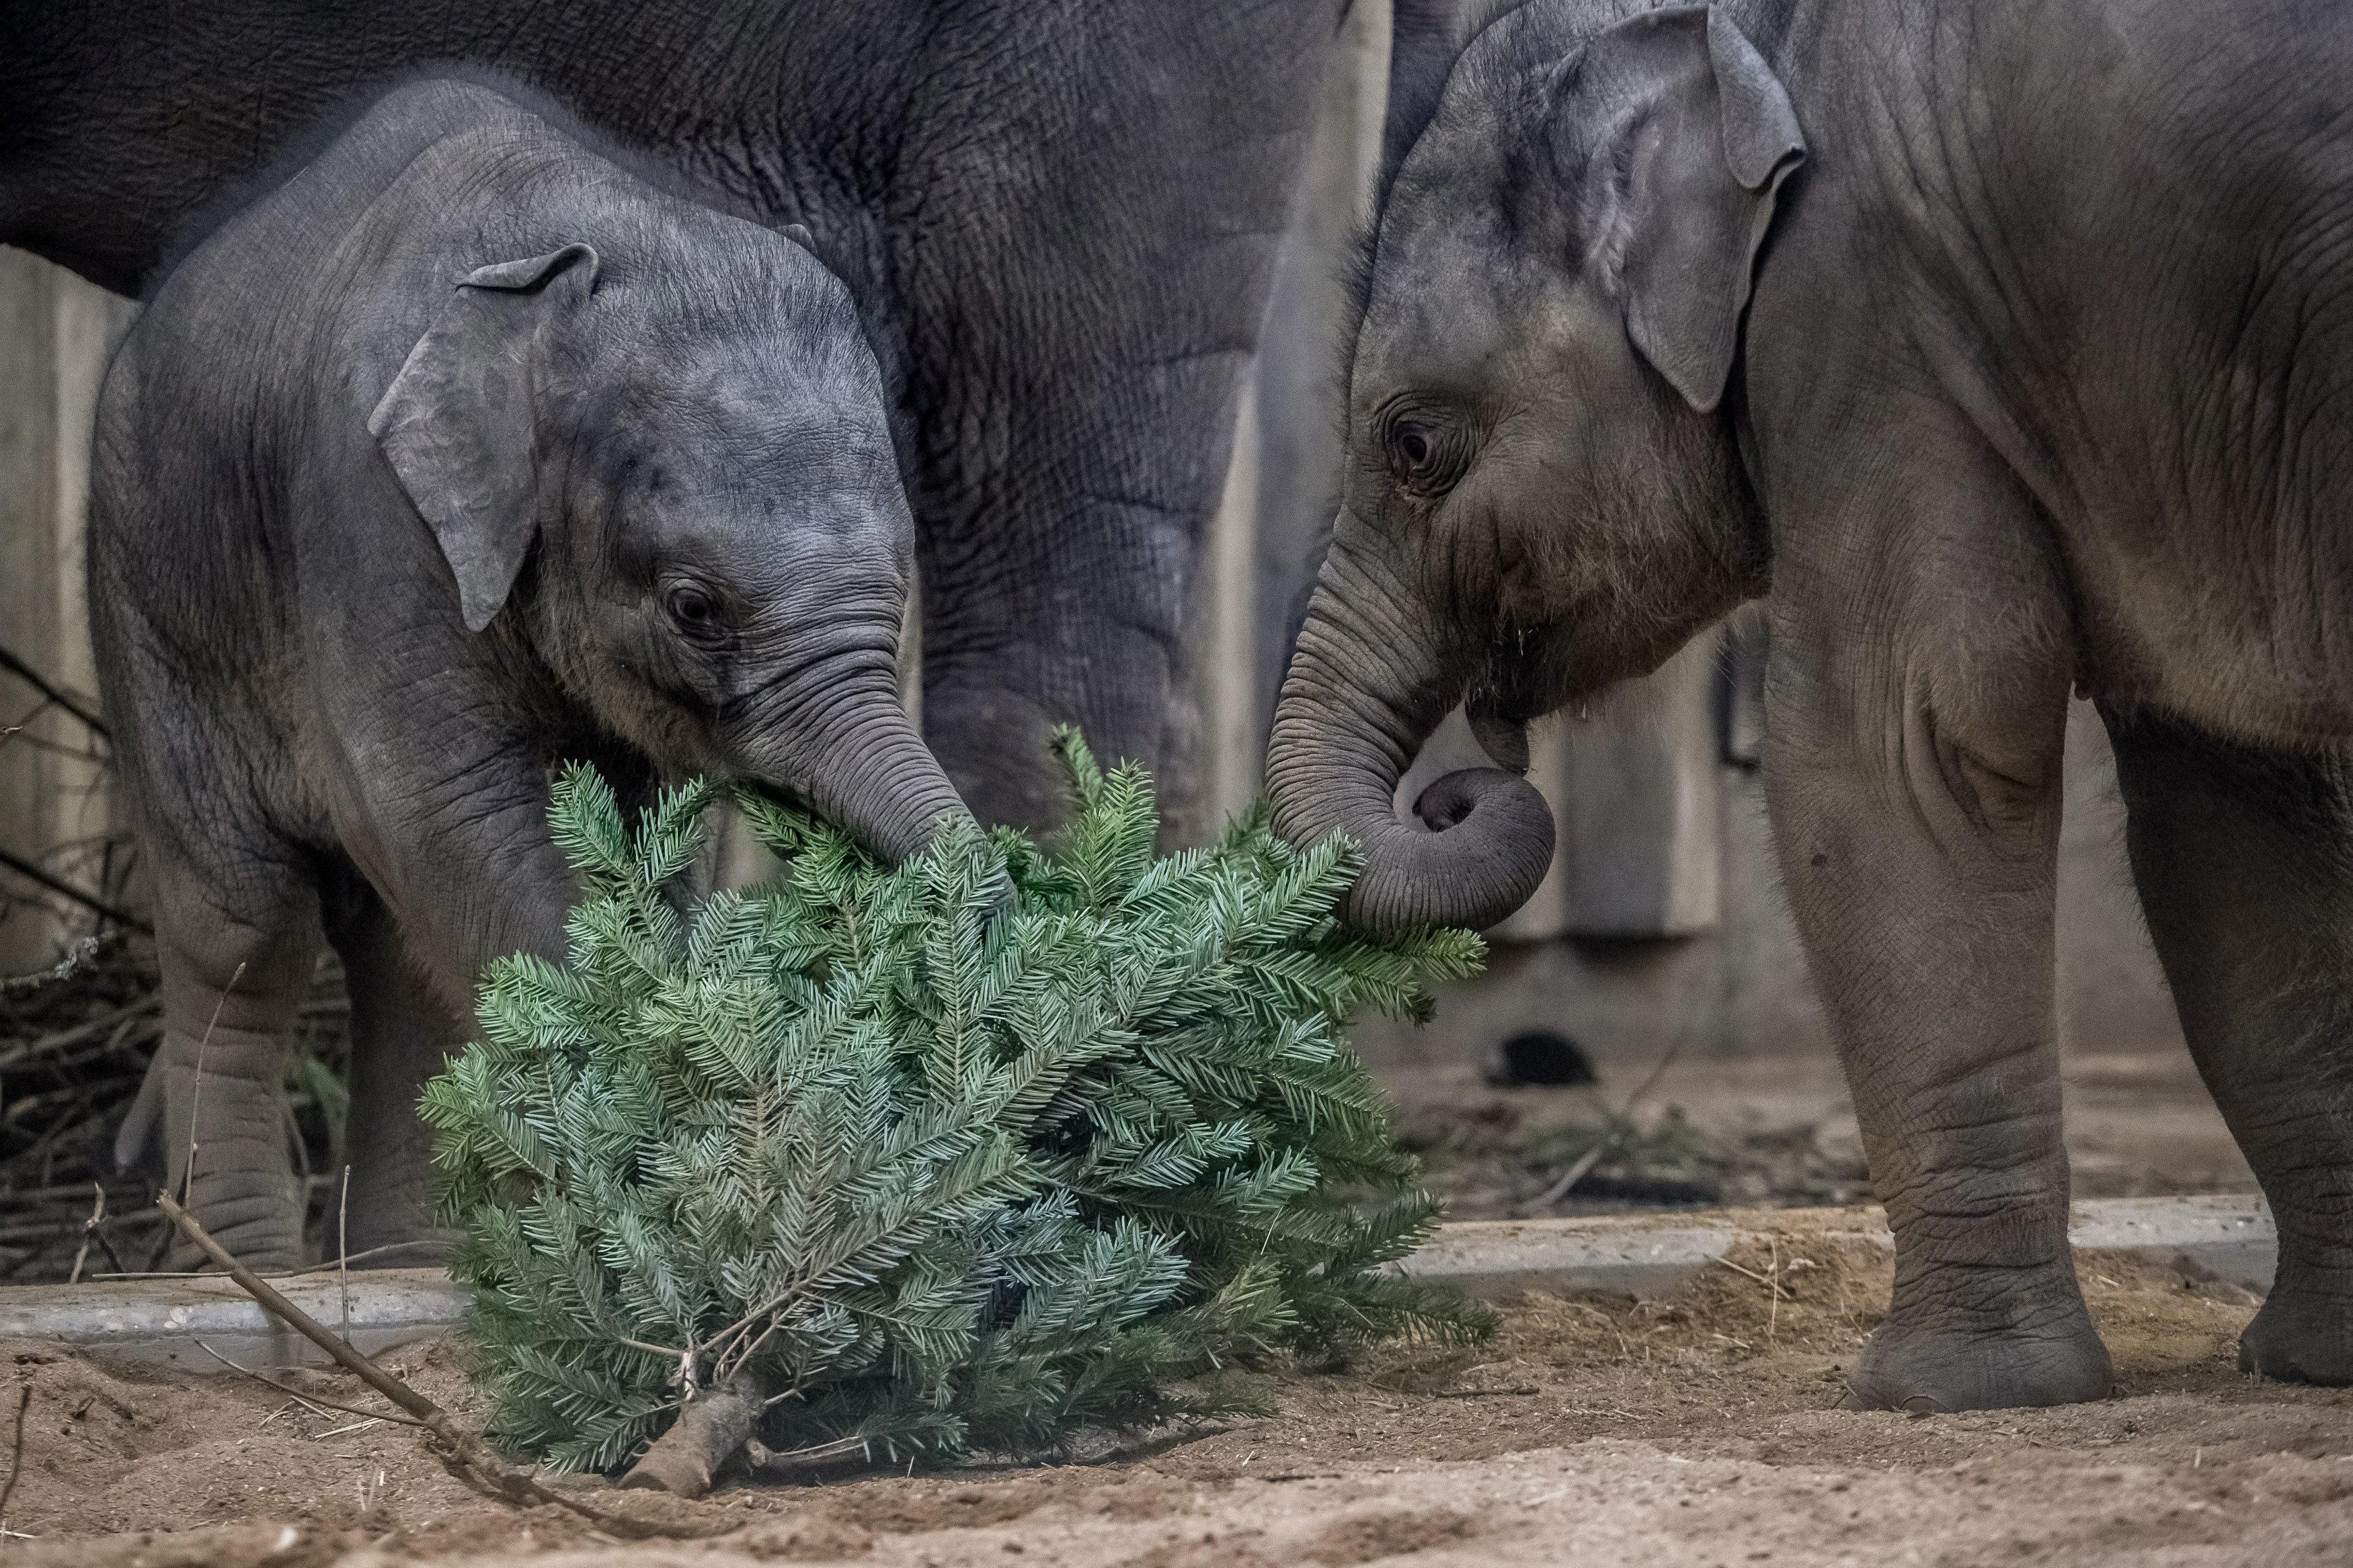 То е толкова сладко, че може да разтопи сърцето на всеки, дори в студеното време навън. Запознайте се с азиатското слонче Руди, което си играе с елхови дръвчета в зоопарка в Прага.